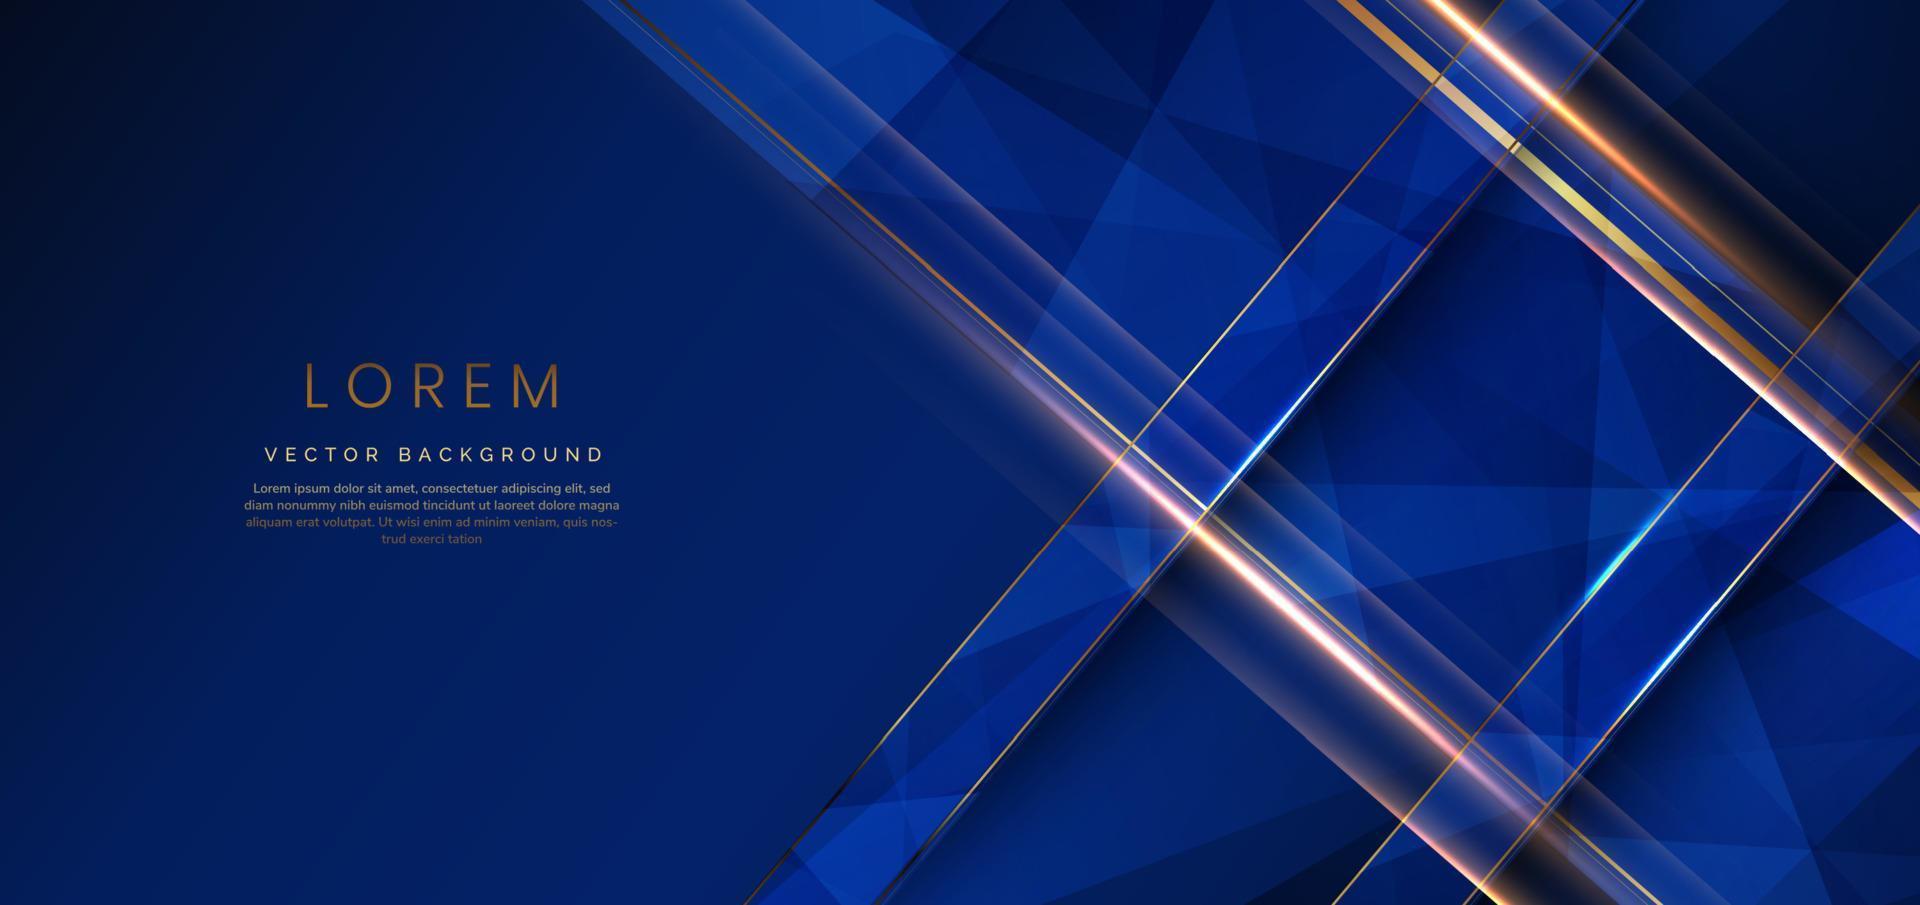 abstrakte goldene luxuslinien diagonal überlappend auf dunkelblauem hintergrund. Vorlage Premium-Award-Design. vektor